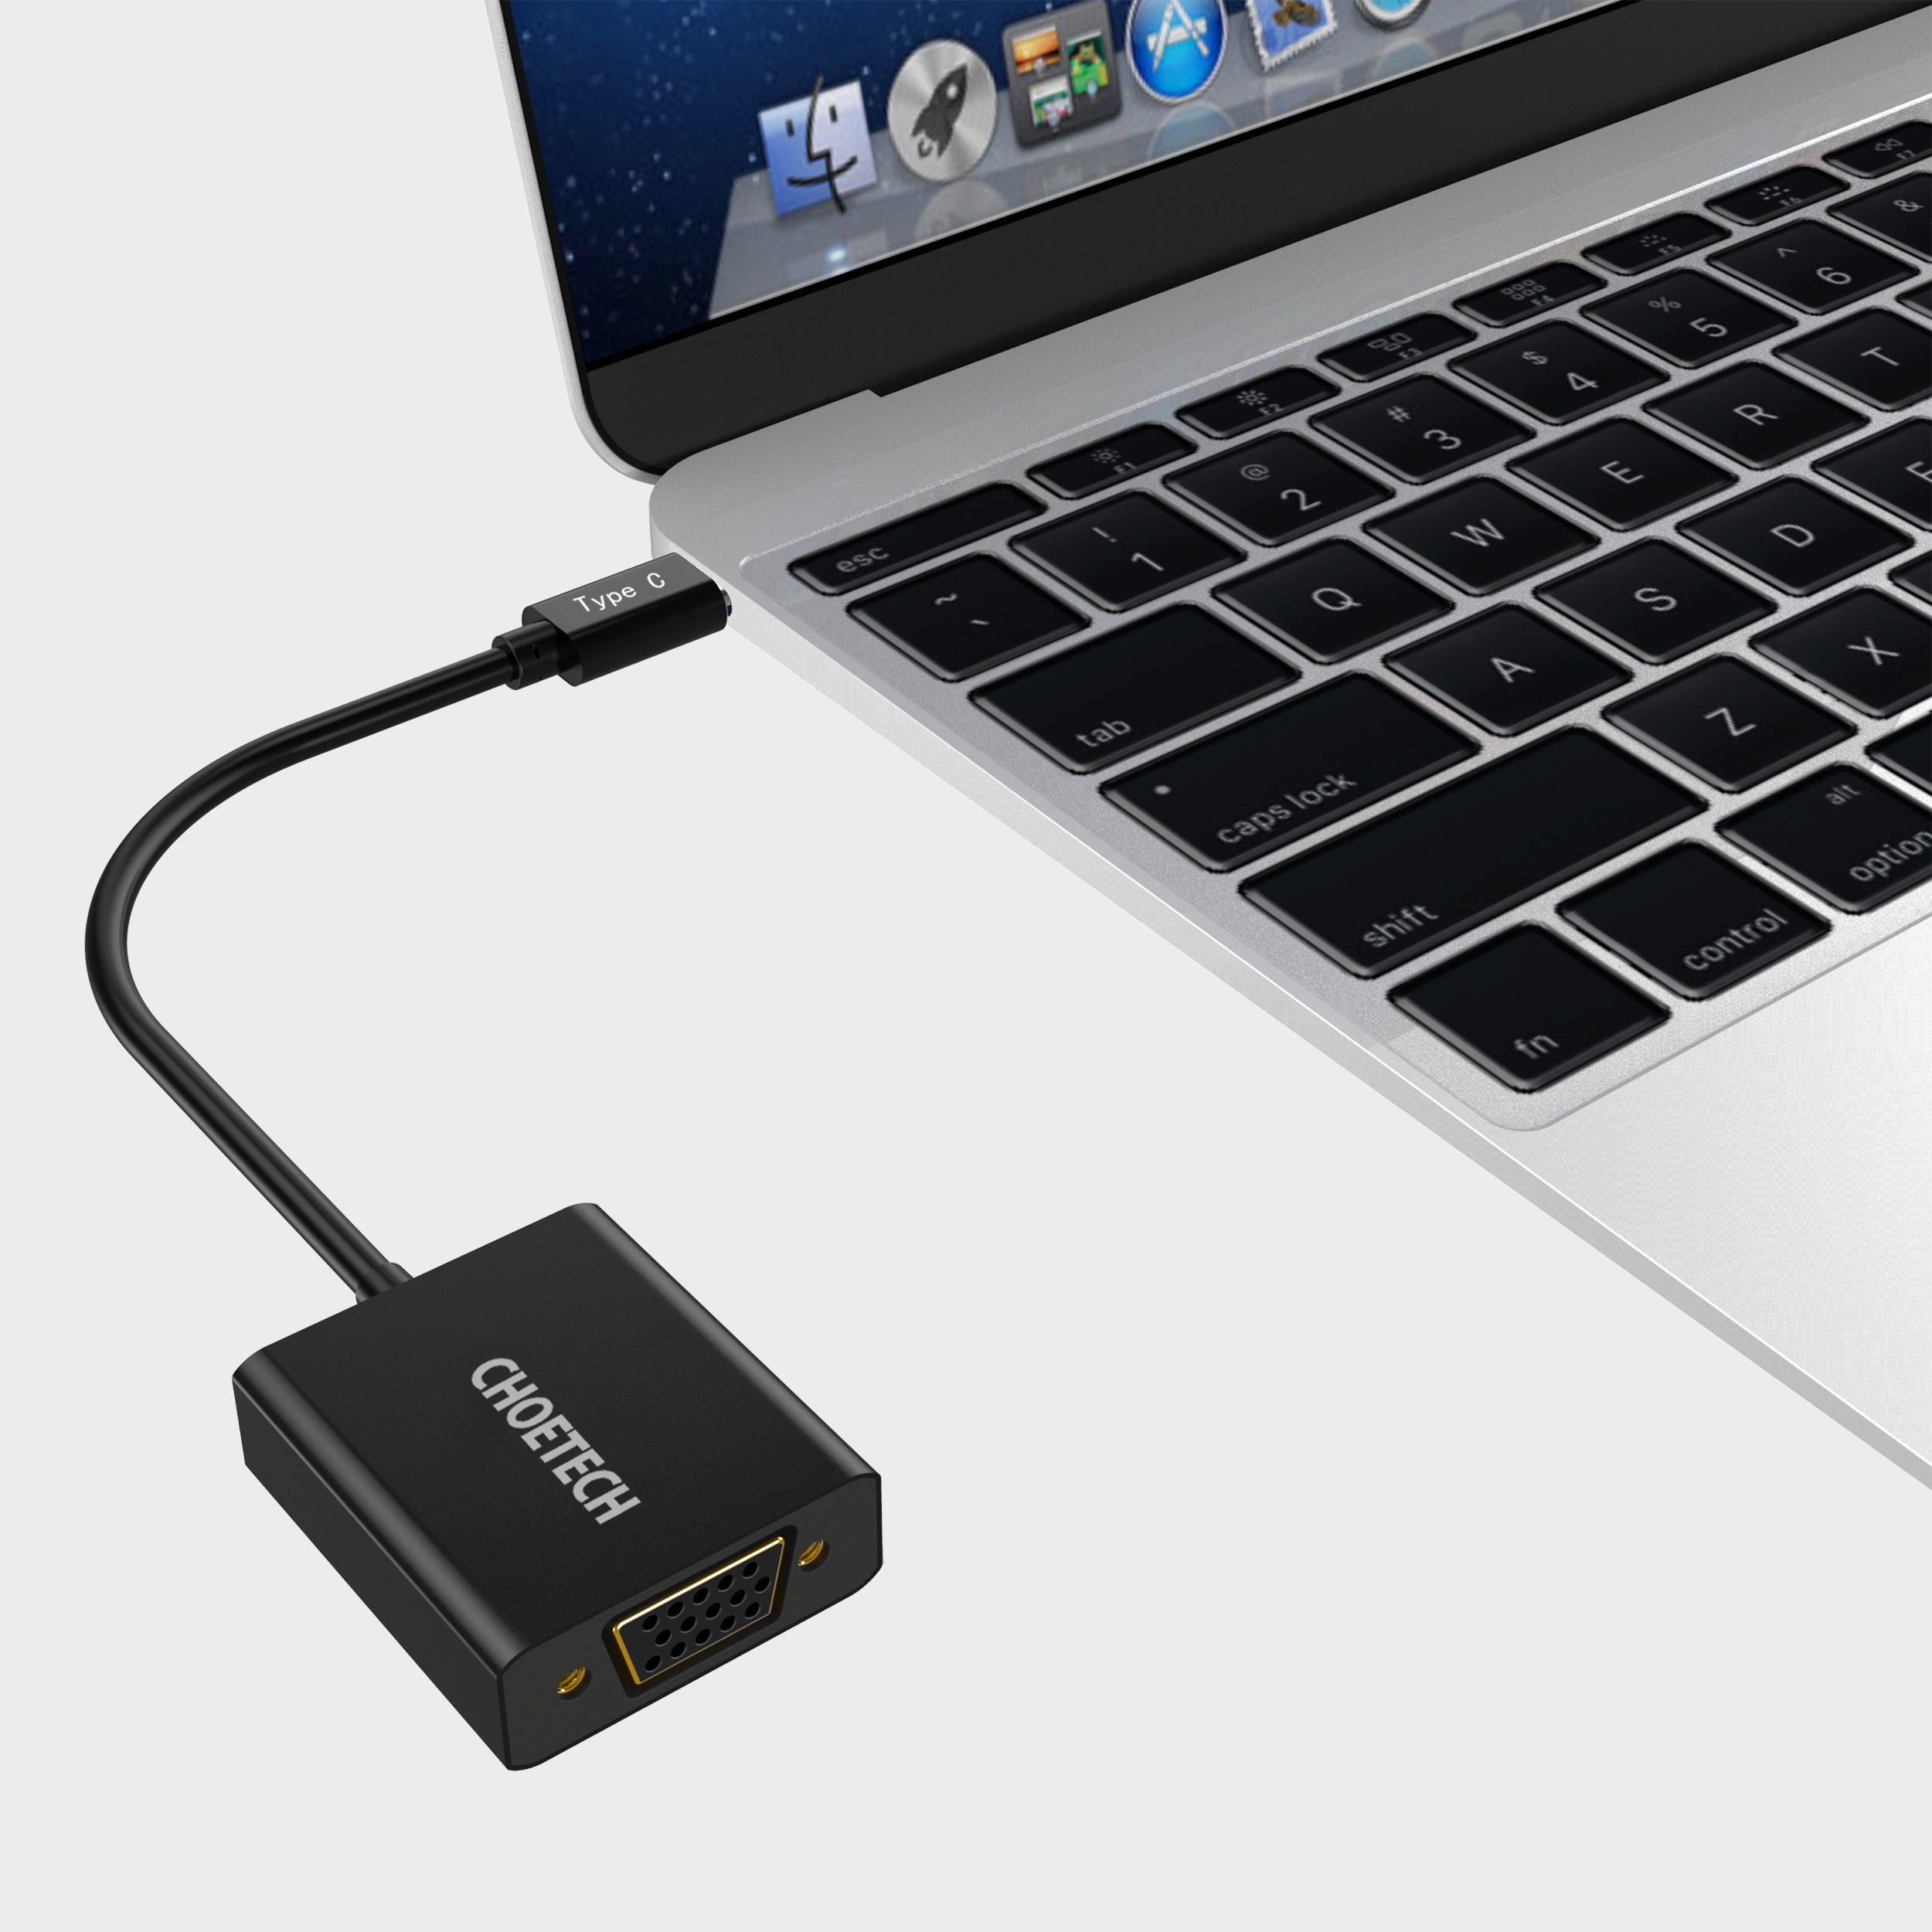 HUB-V01 Choetech Adaptateur USB 3.1 USB Type-C vers VGA pris en charge 1080p (compatible Thunderbolt 3 ports) pour MacBook, Chromebook Pixel et autres appareils Type-C